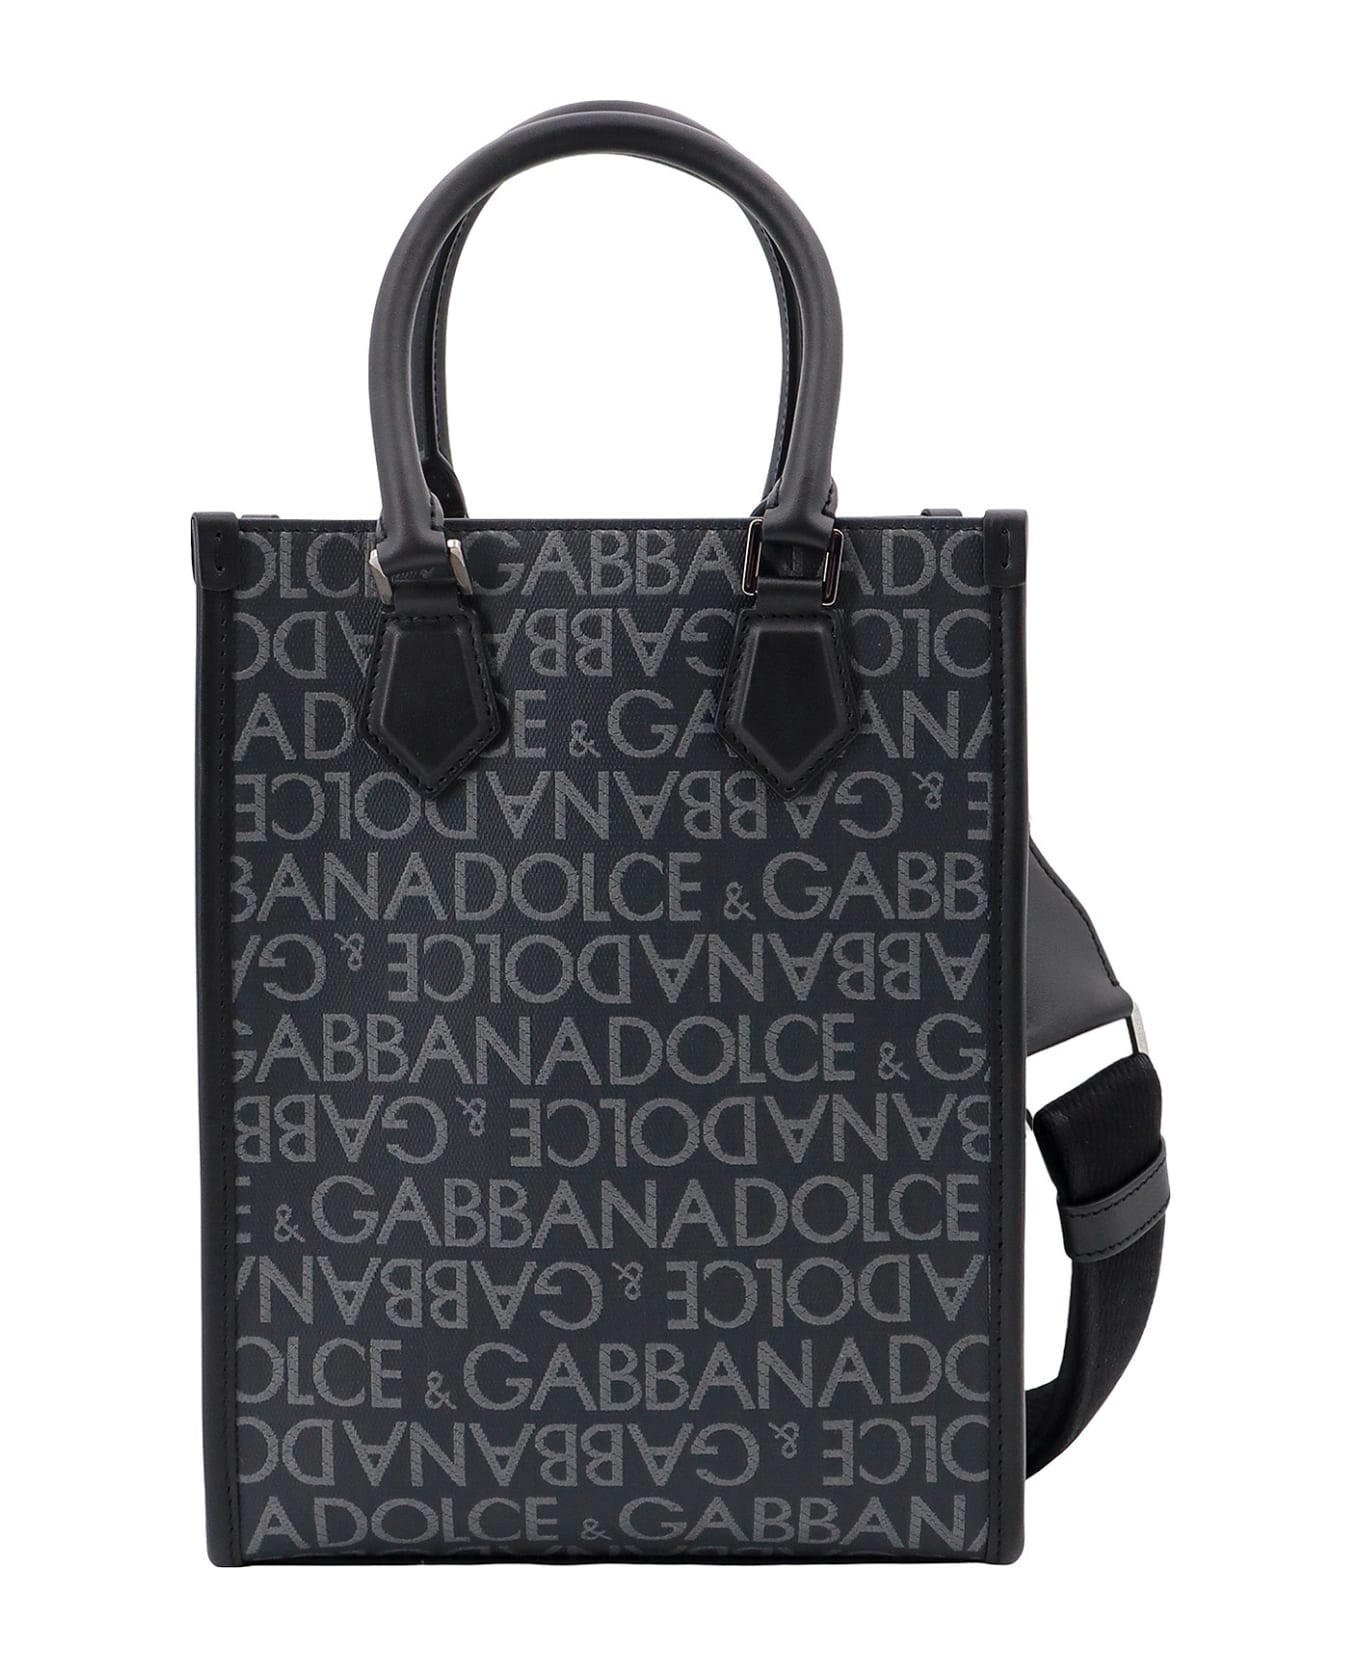 Dolce & Gabbana Handbag - Blue